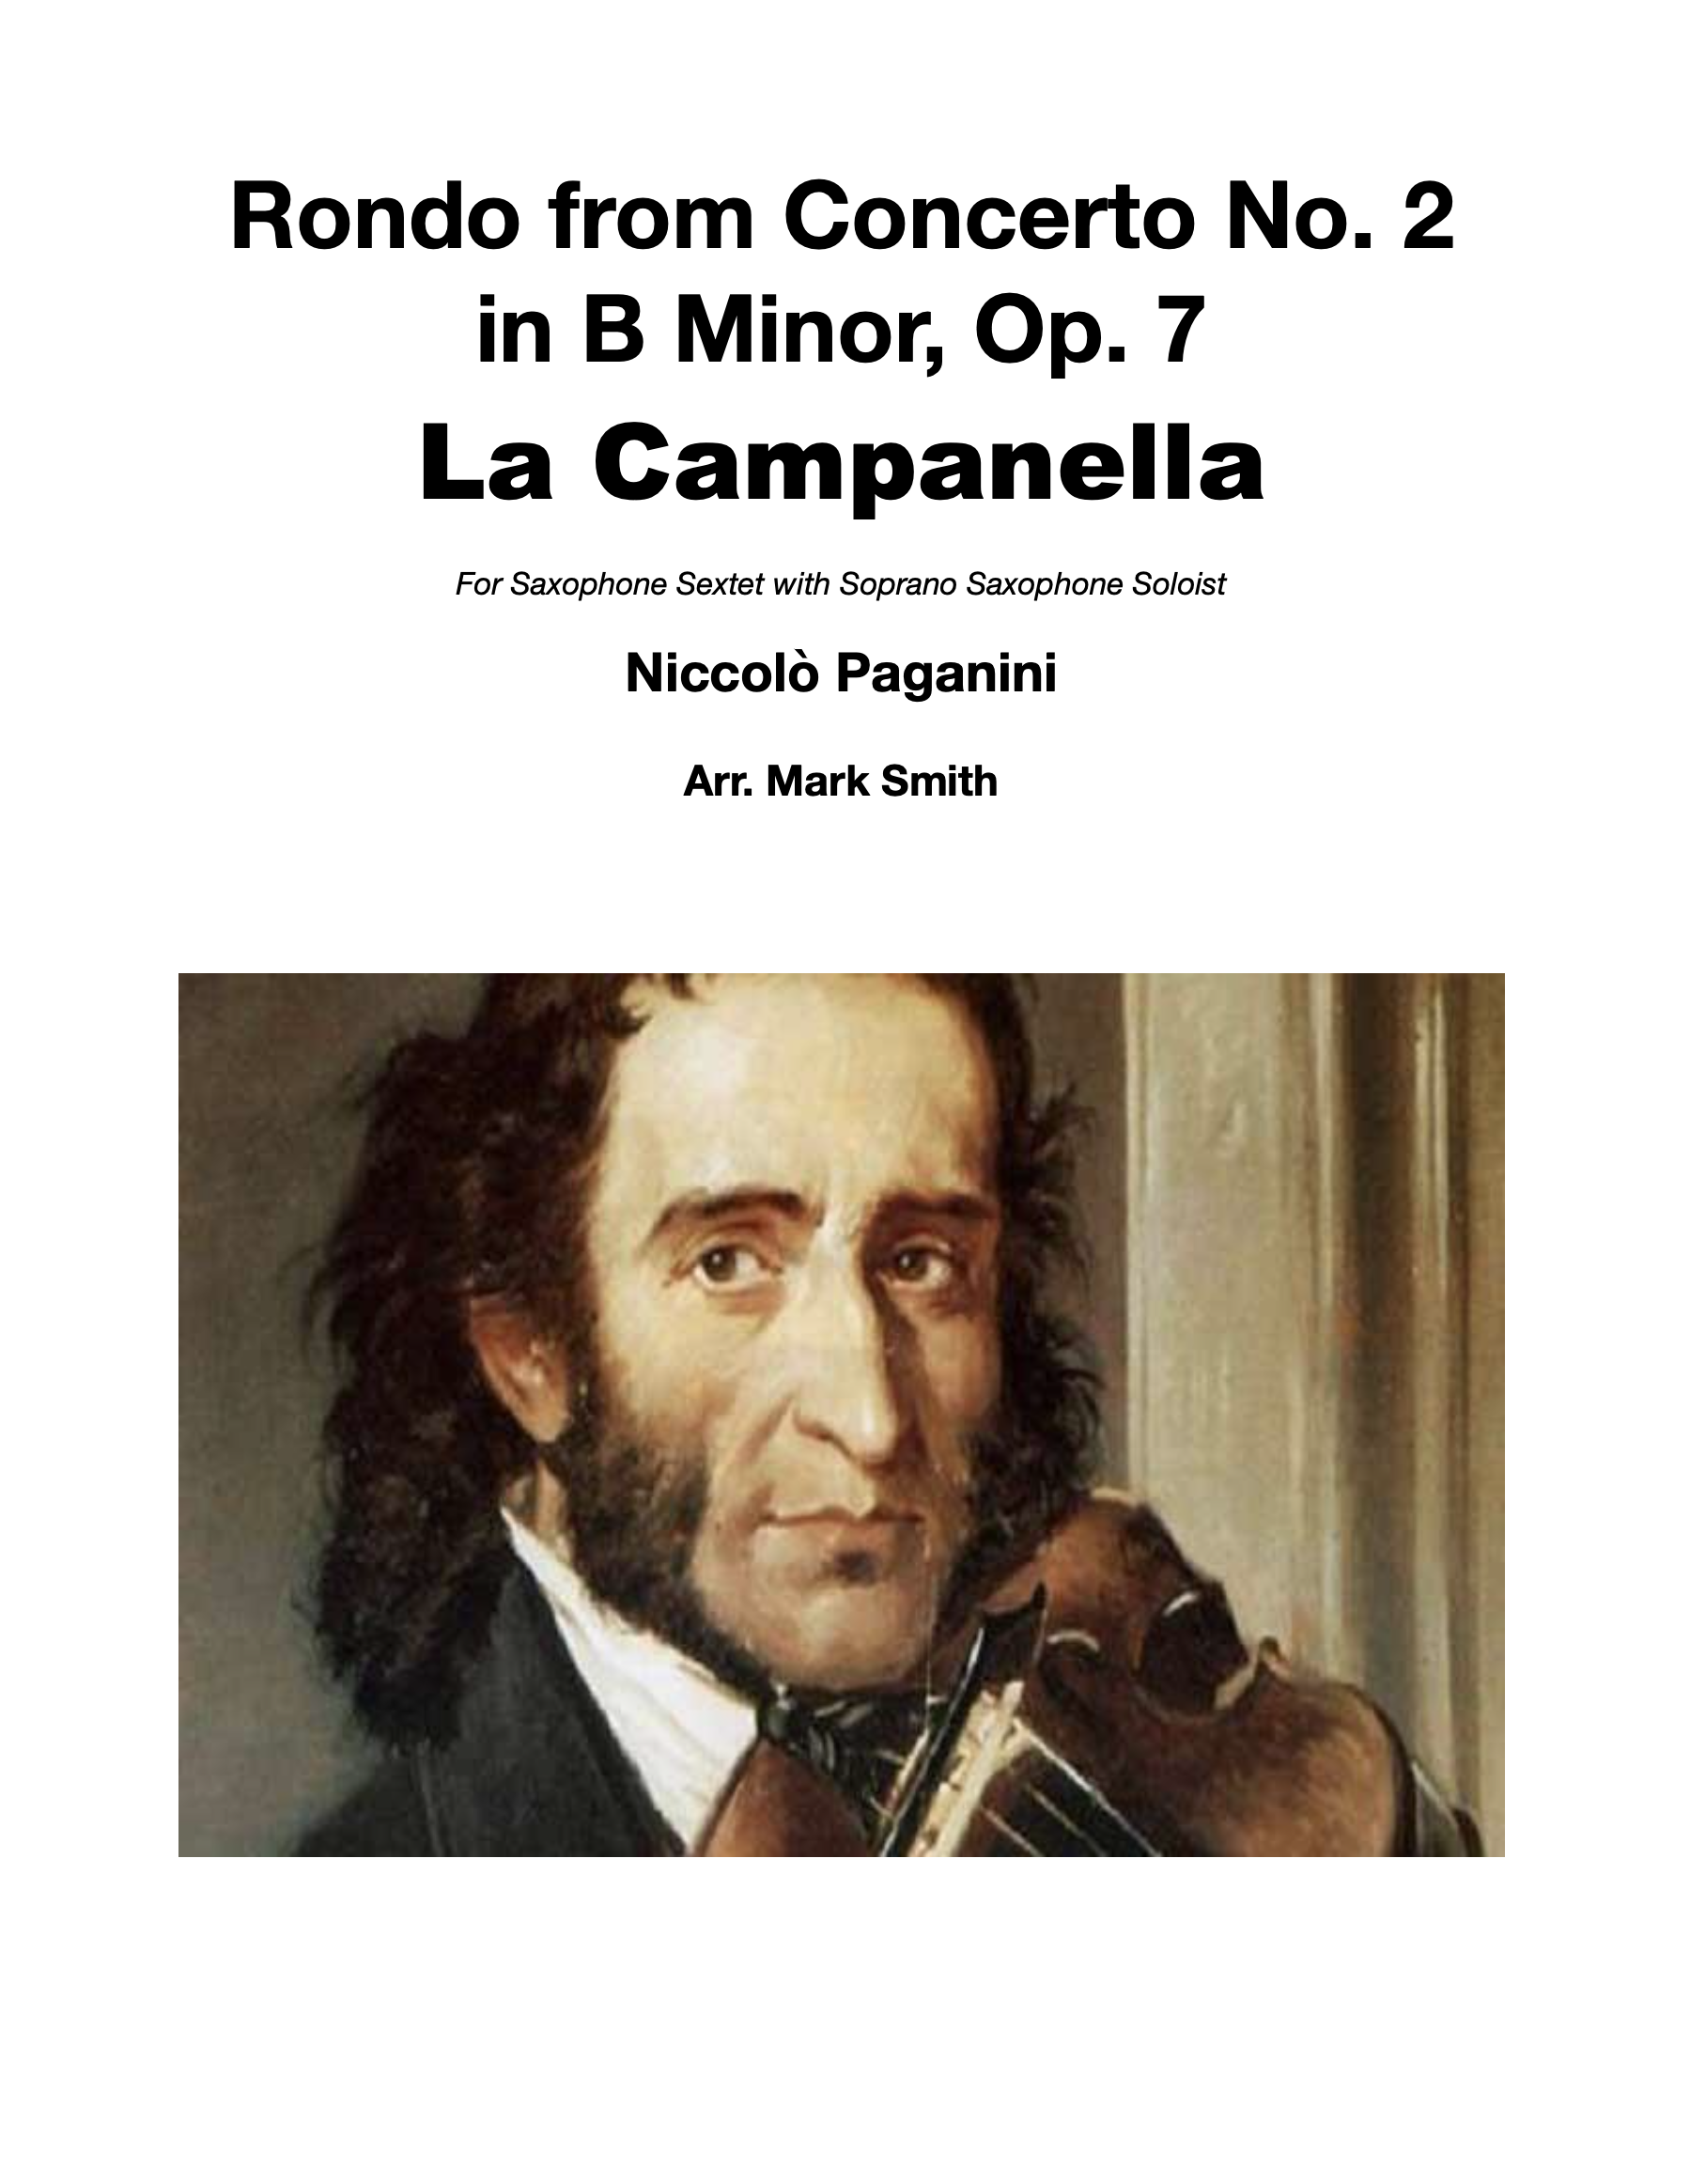 La Campanella  by Paganini, arr. Mark Smith